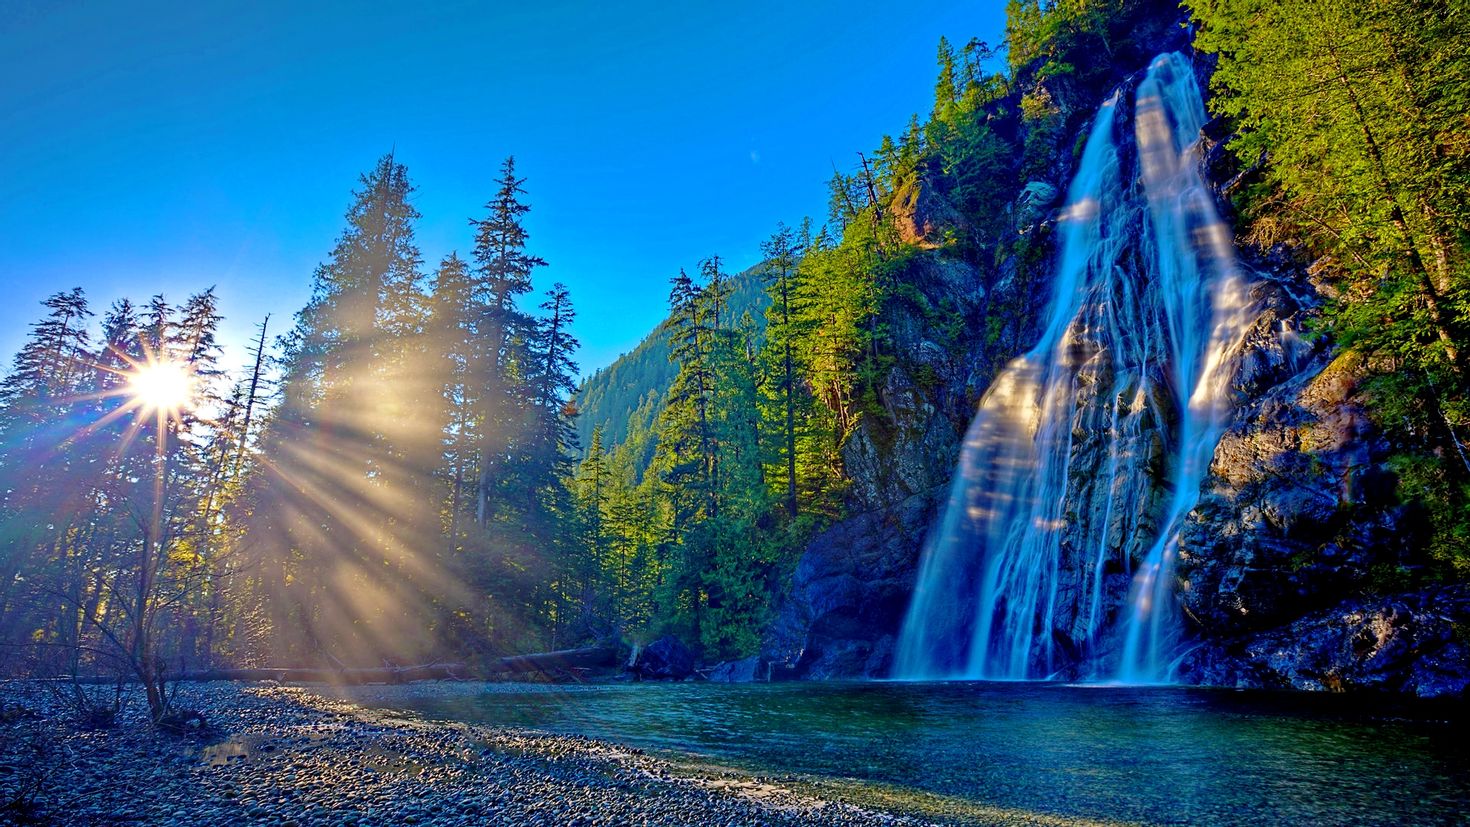 Big jpg image. Природа. Красивая природа. Природа водопад. Красота природы.